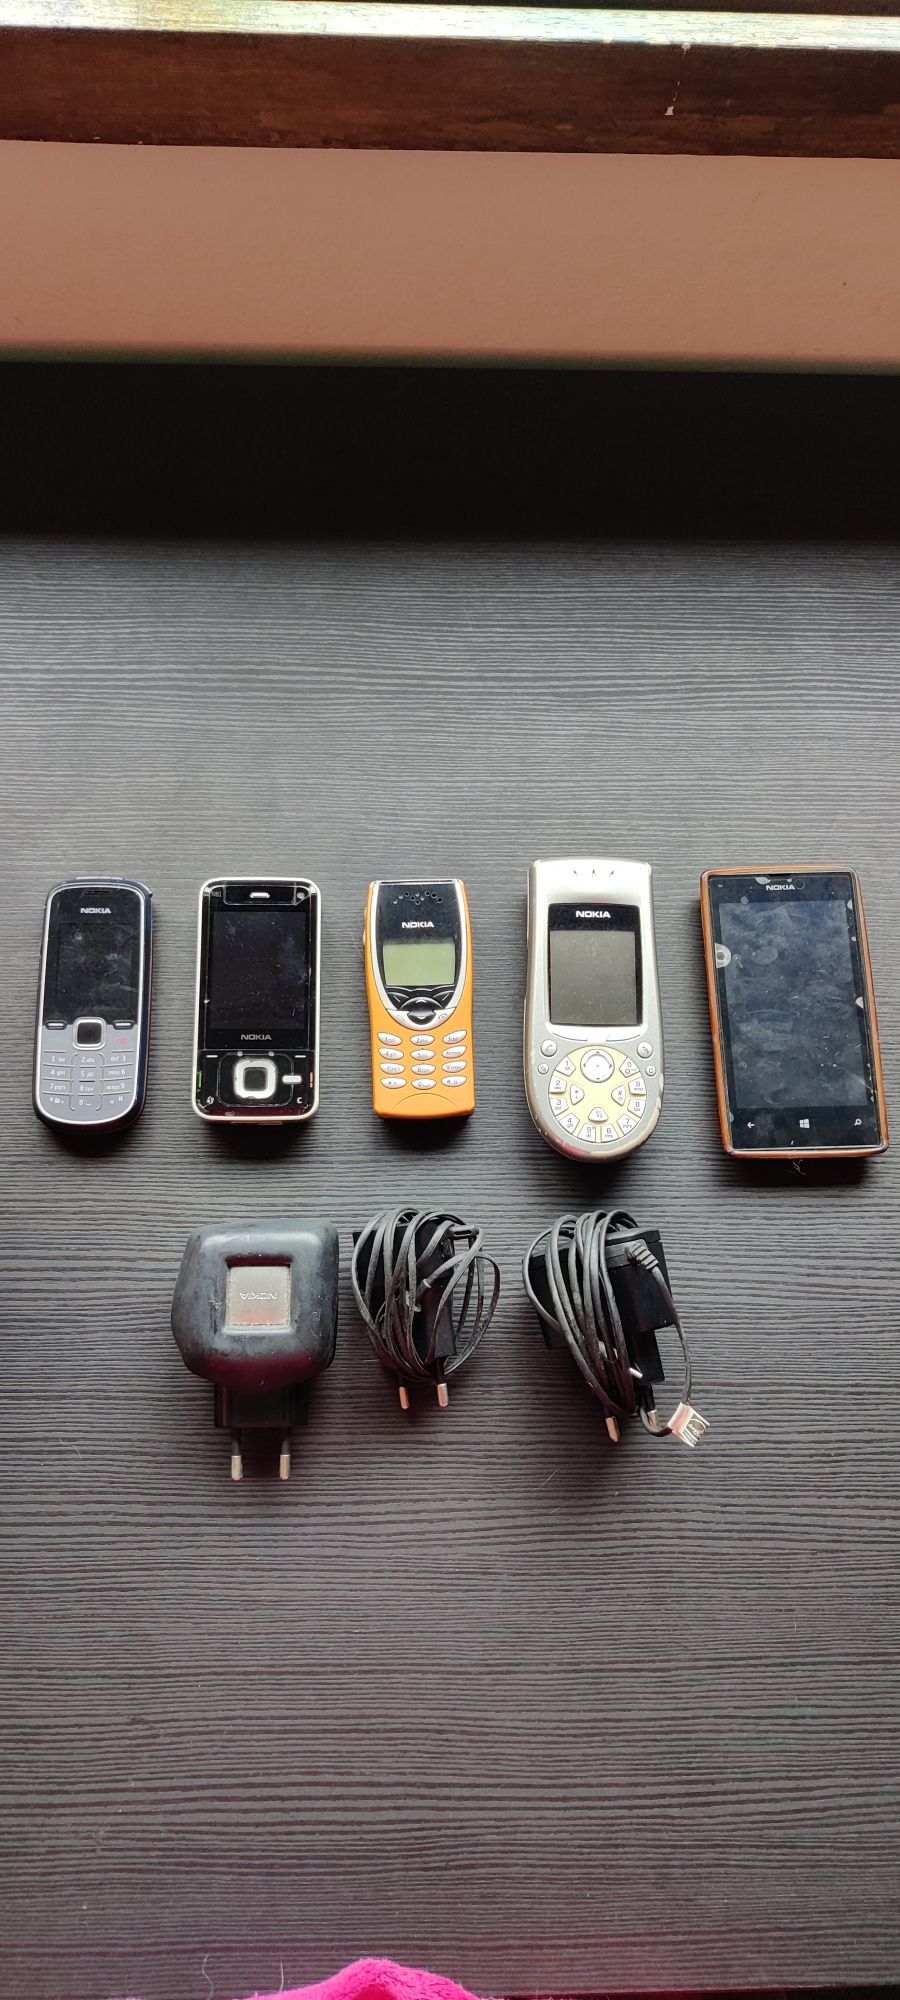 Coleção telemóveis Nokia antigos